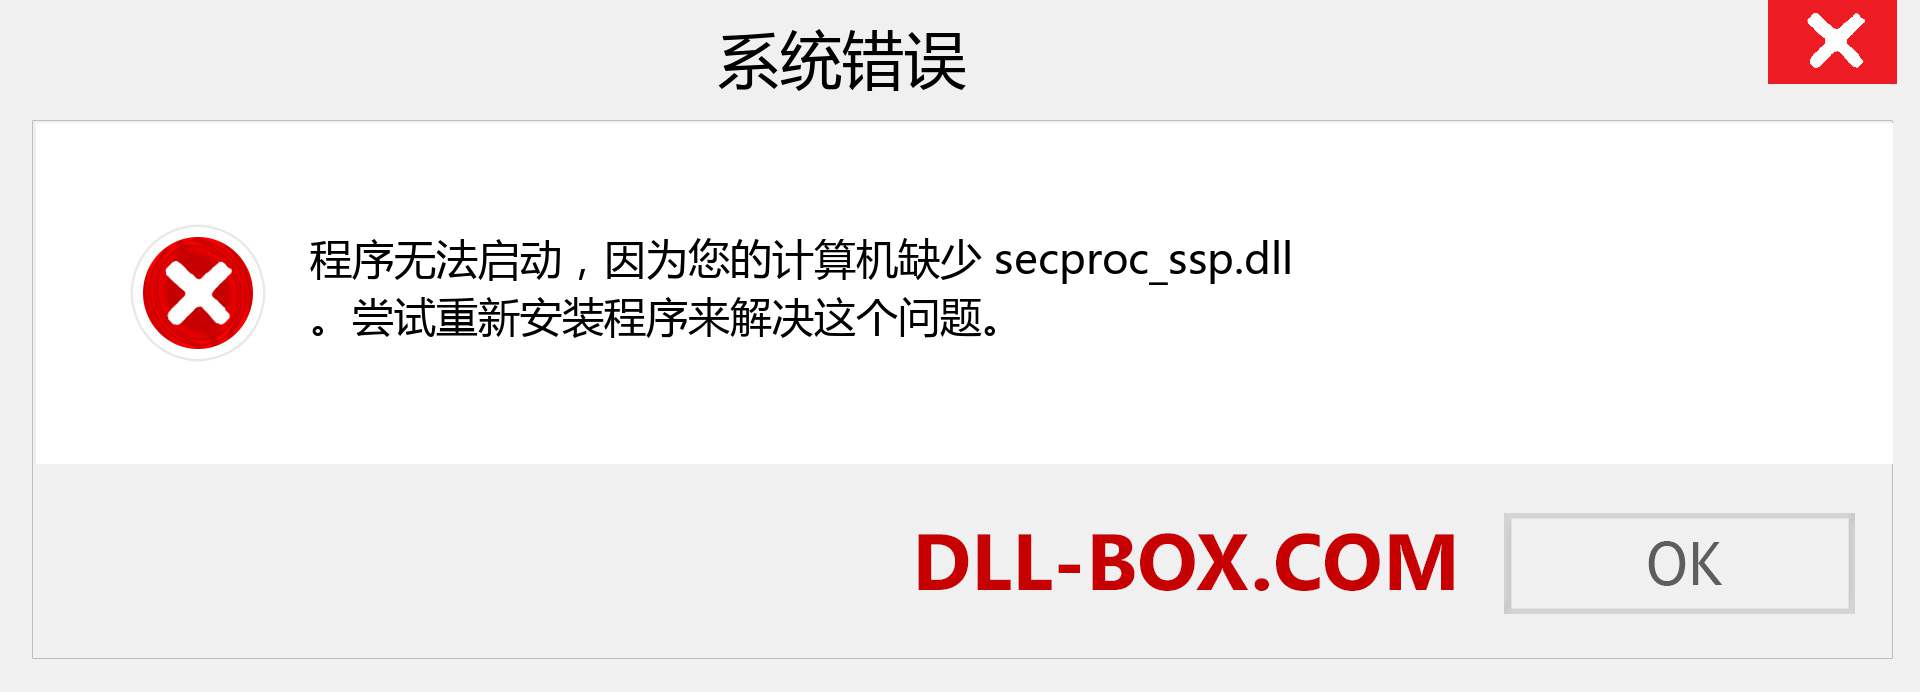 secproc_ssp.dll 文件丢失？。 适用于 Windows 7、8、10 的下载 - 修复 Windows、照片、图像上的 secproc_ssp dll 丢失错误